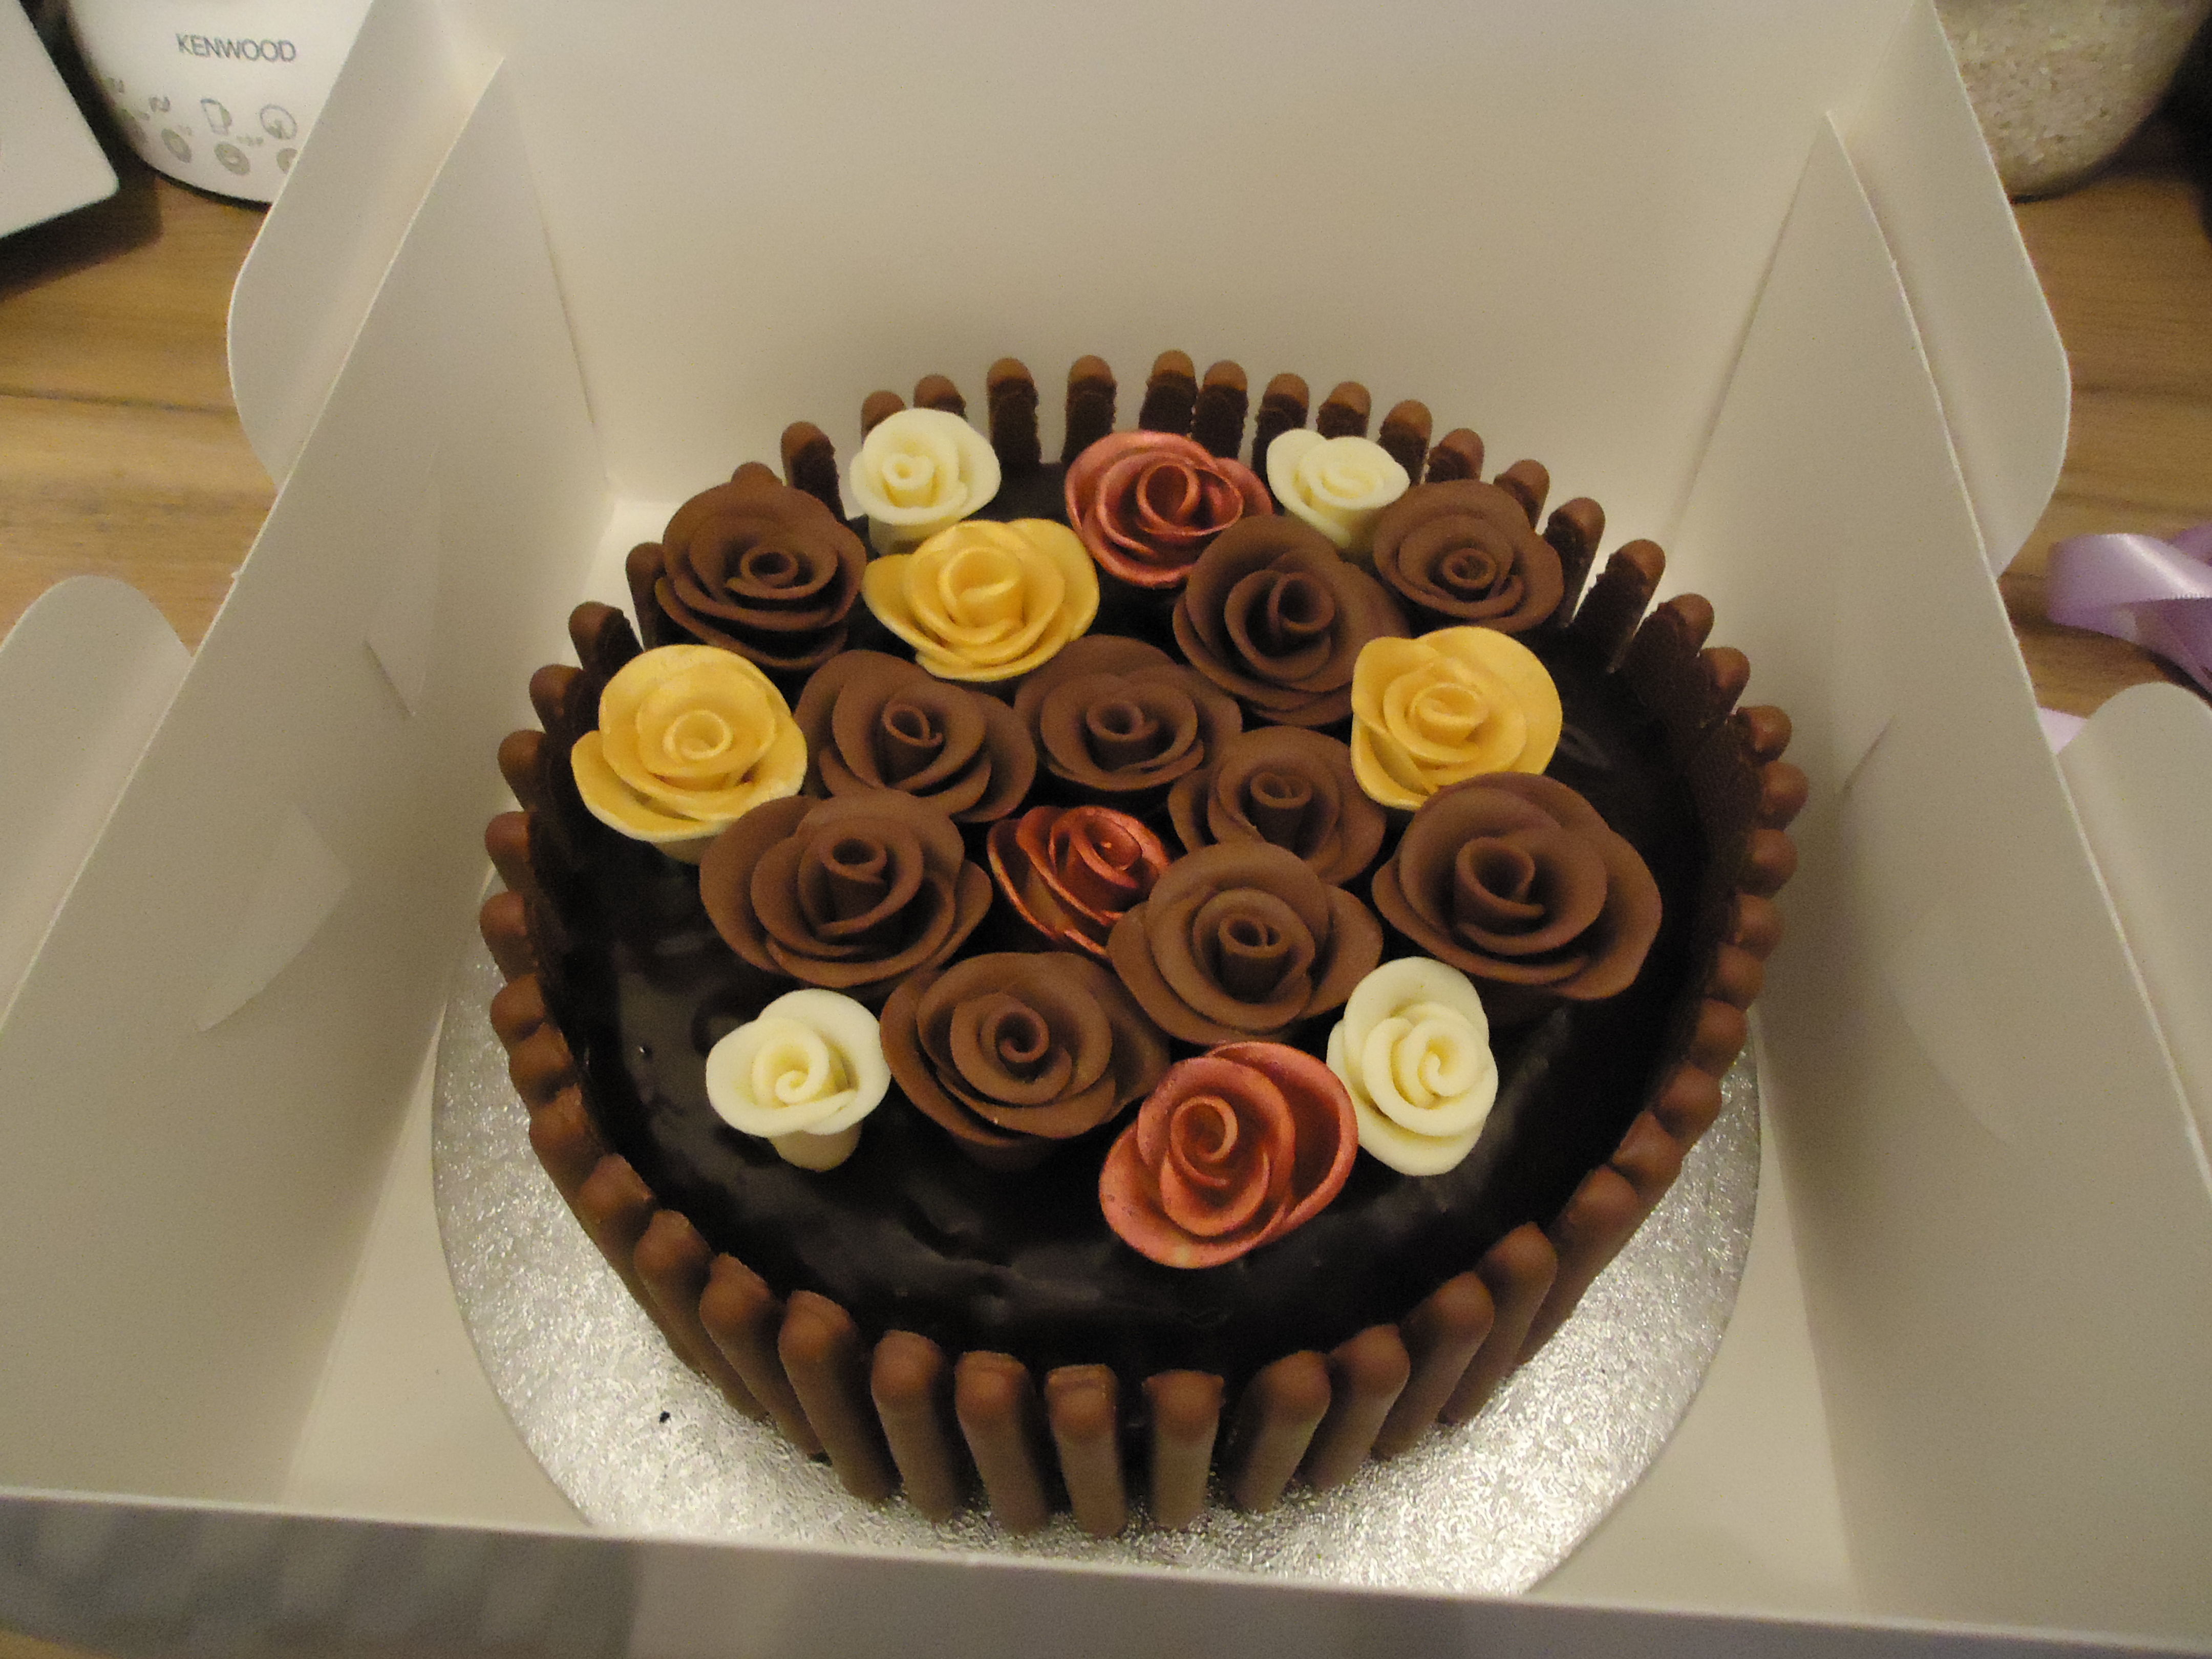 Indulgent Chocolate Birthday Cake - Mackas BirthDay Cake